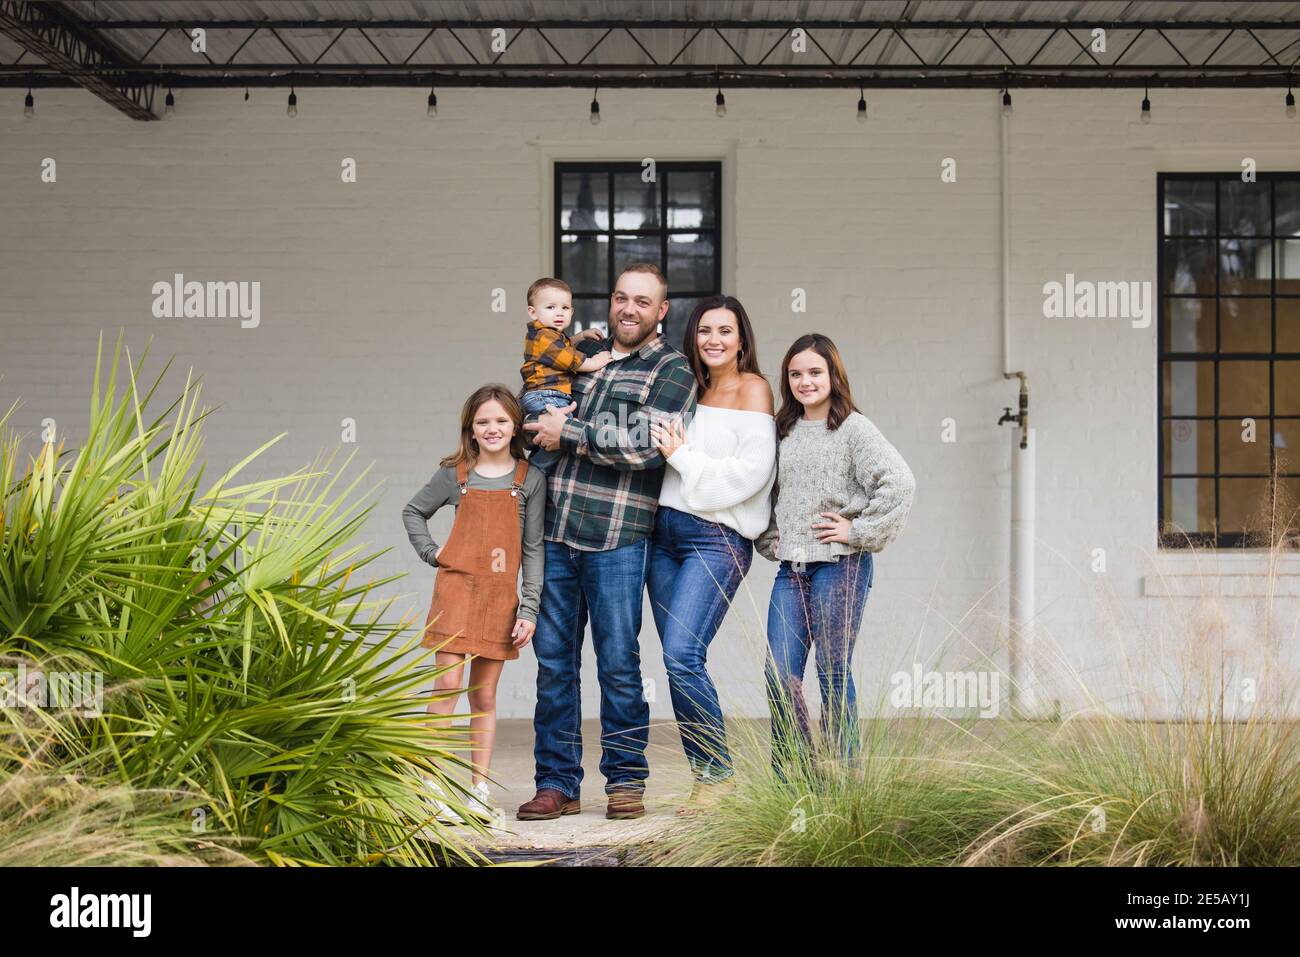 Eine fünfköpfige Familie mit zwei Mädchen und einem Baby Junge, der vor einem einfachen weißen Backsteingebäude steht Stockfoto